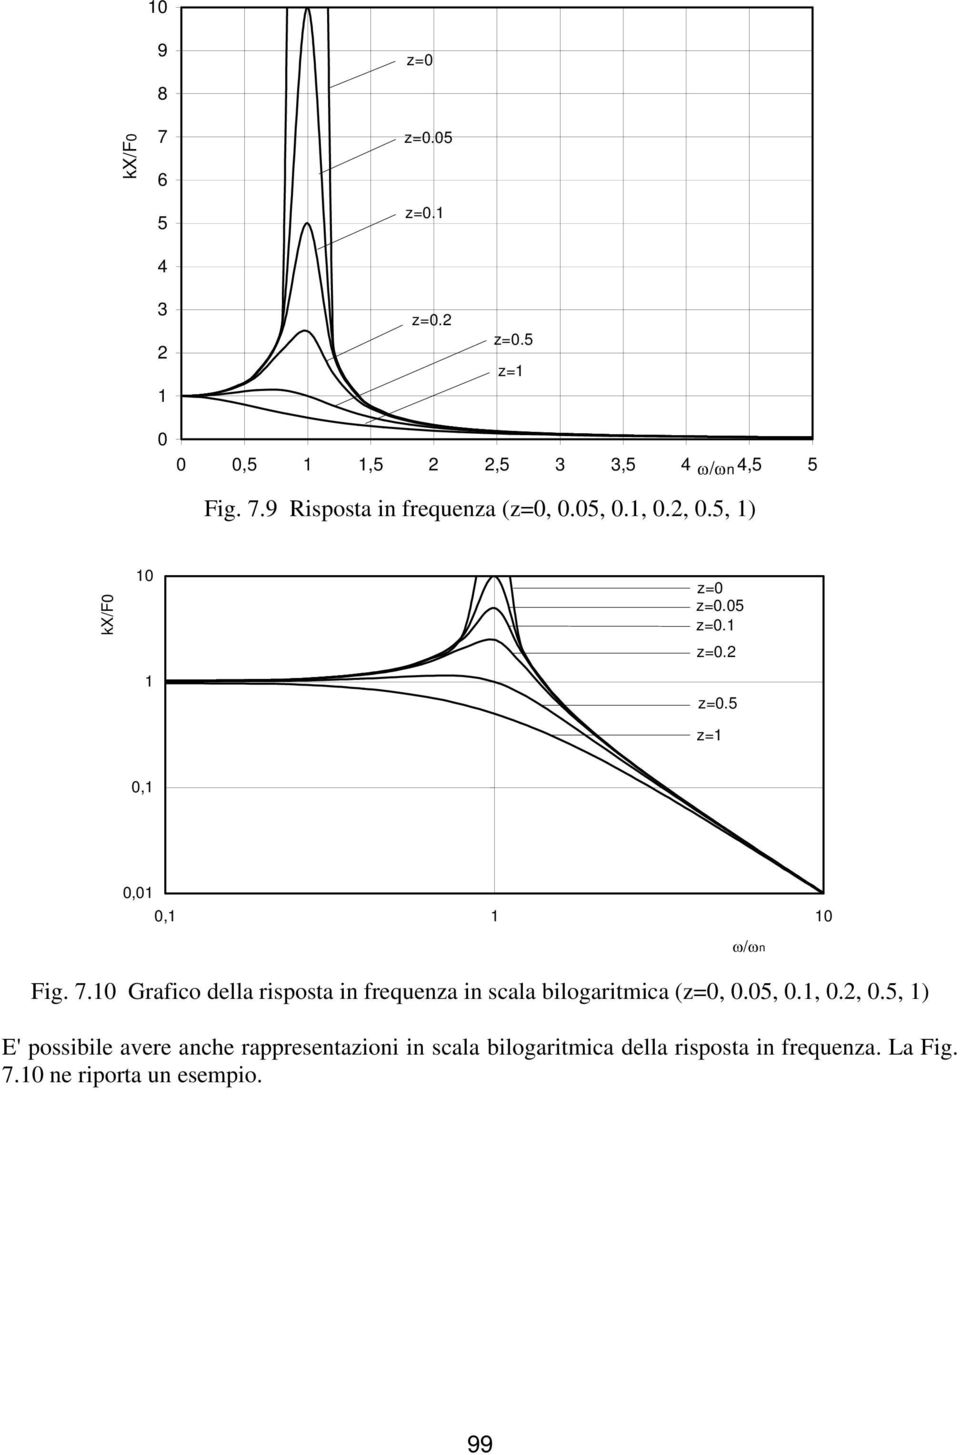 Grafico della risposta i frequeza i scala bilogaritmica (z=,.